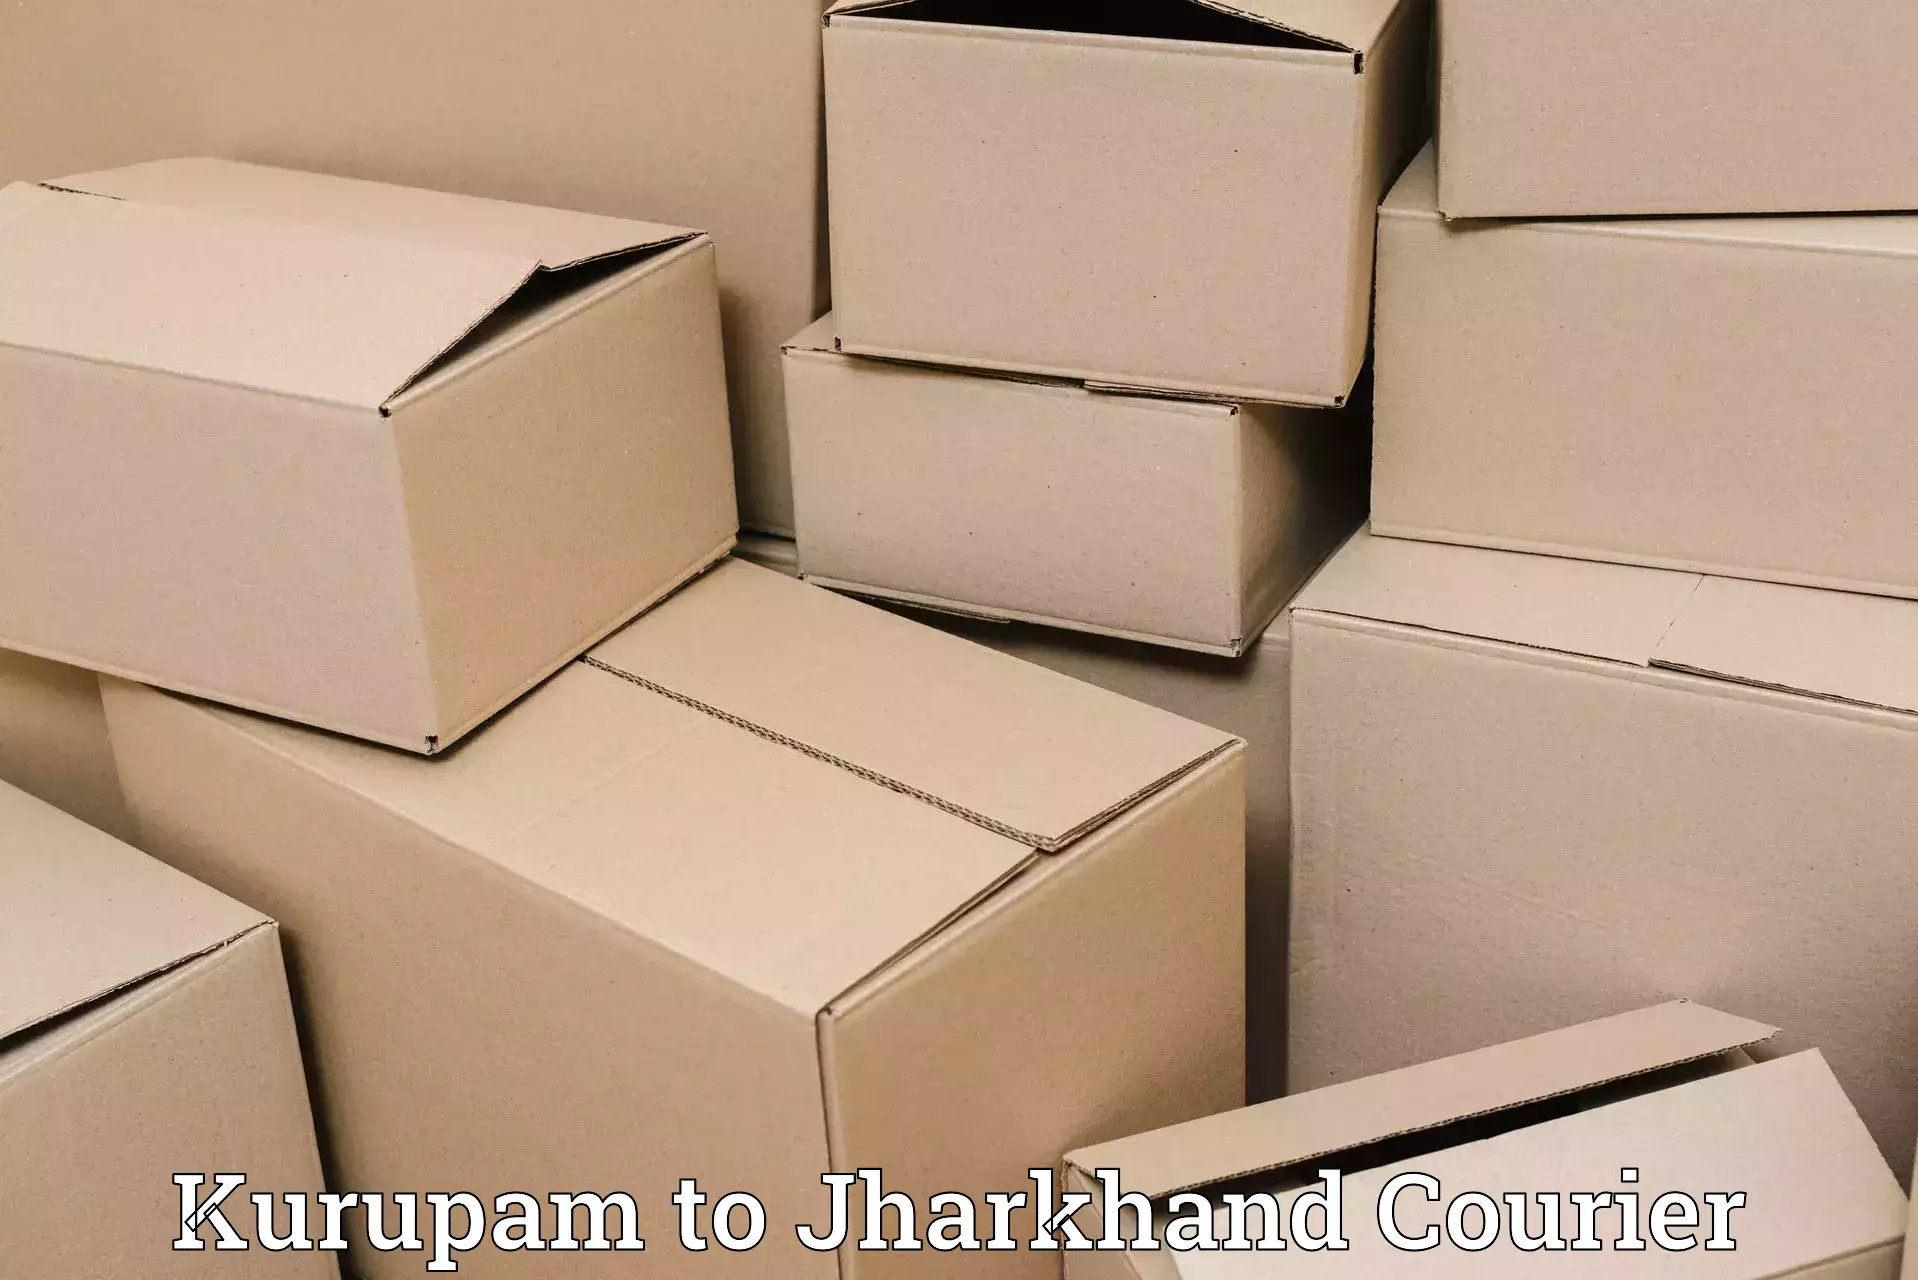 Express logistics service Kurupam to Phusro